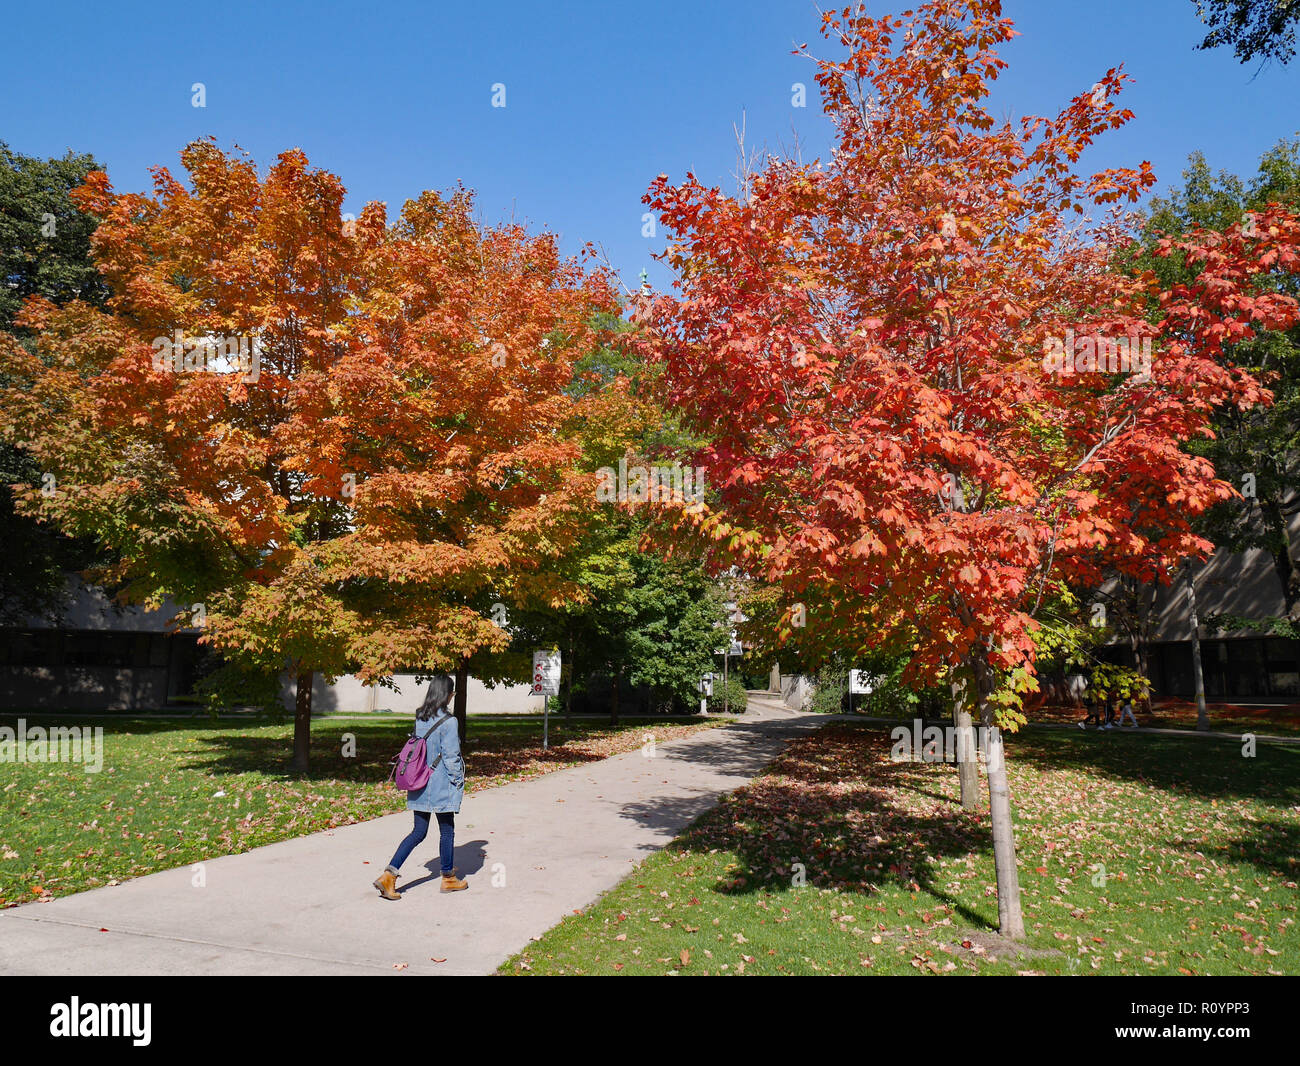 Campus de l'université avec des étudiants marcher parmi les couleurs d'automne Banque D'Images